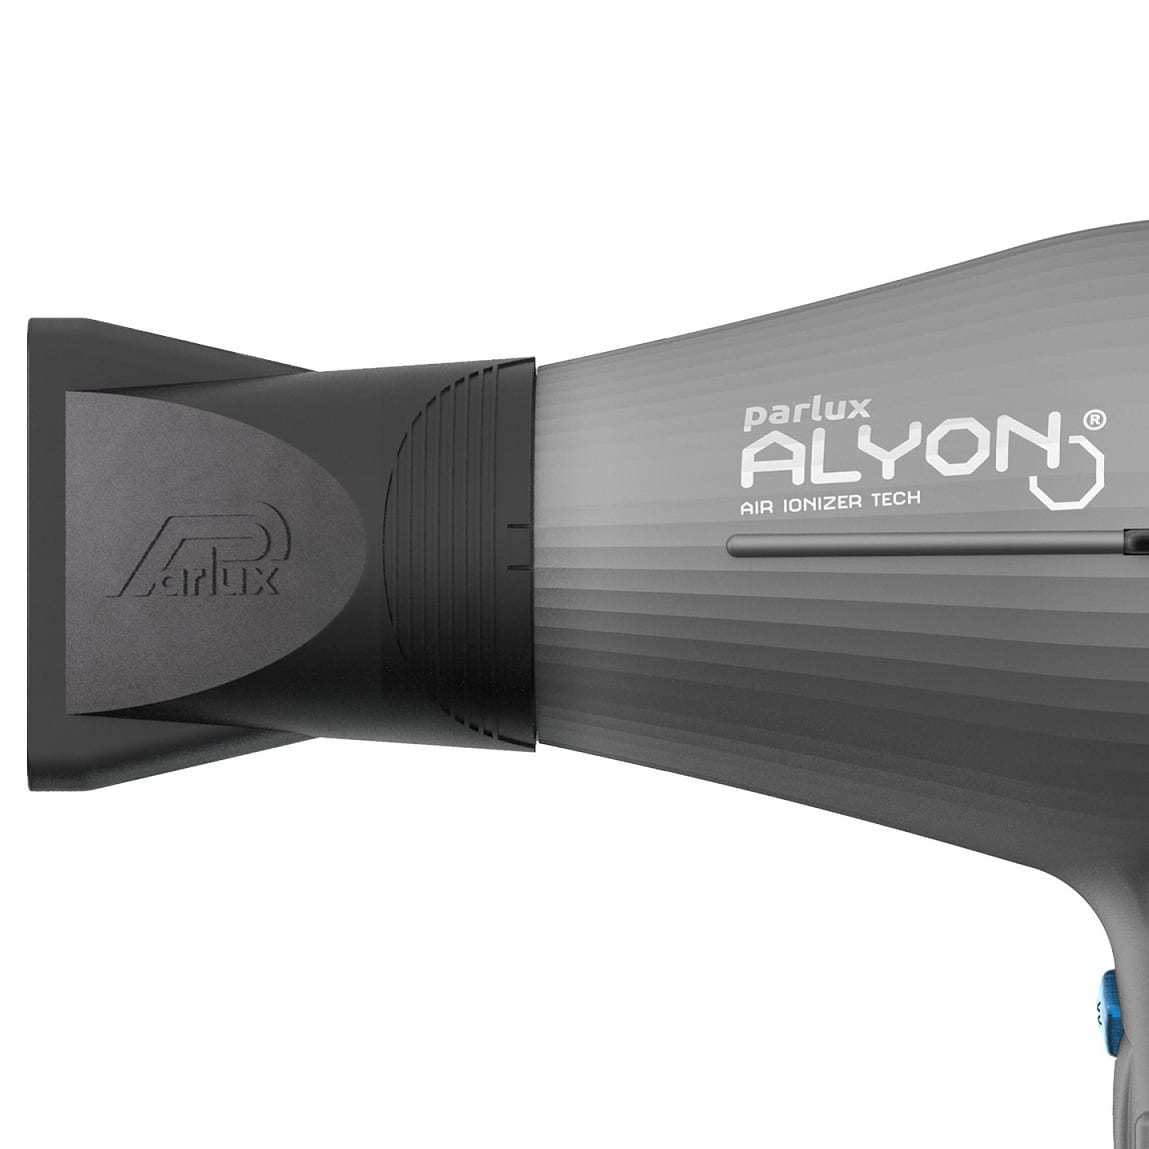 Профессиональный фен Parlux Alyon 0901-Alyon matt graphite - 2